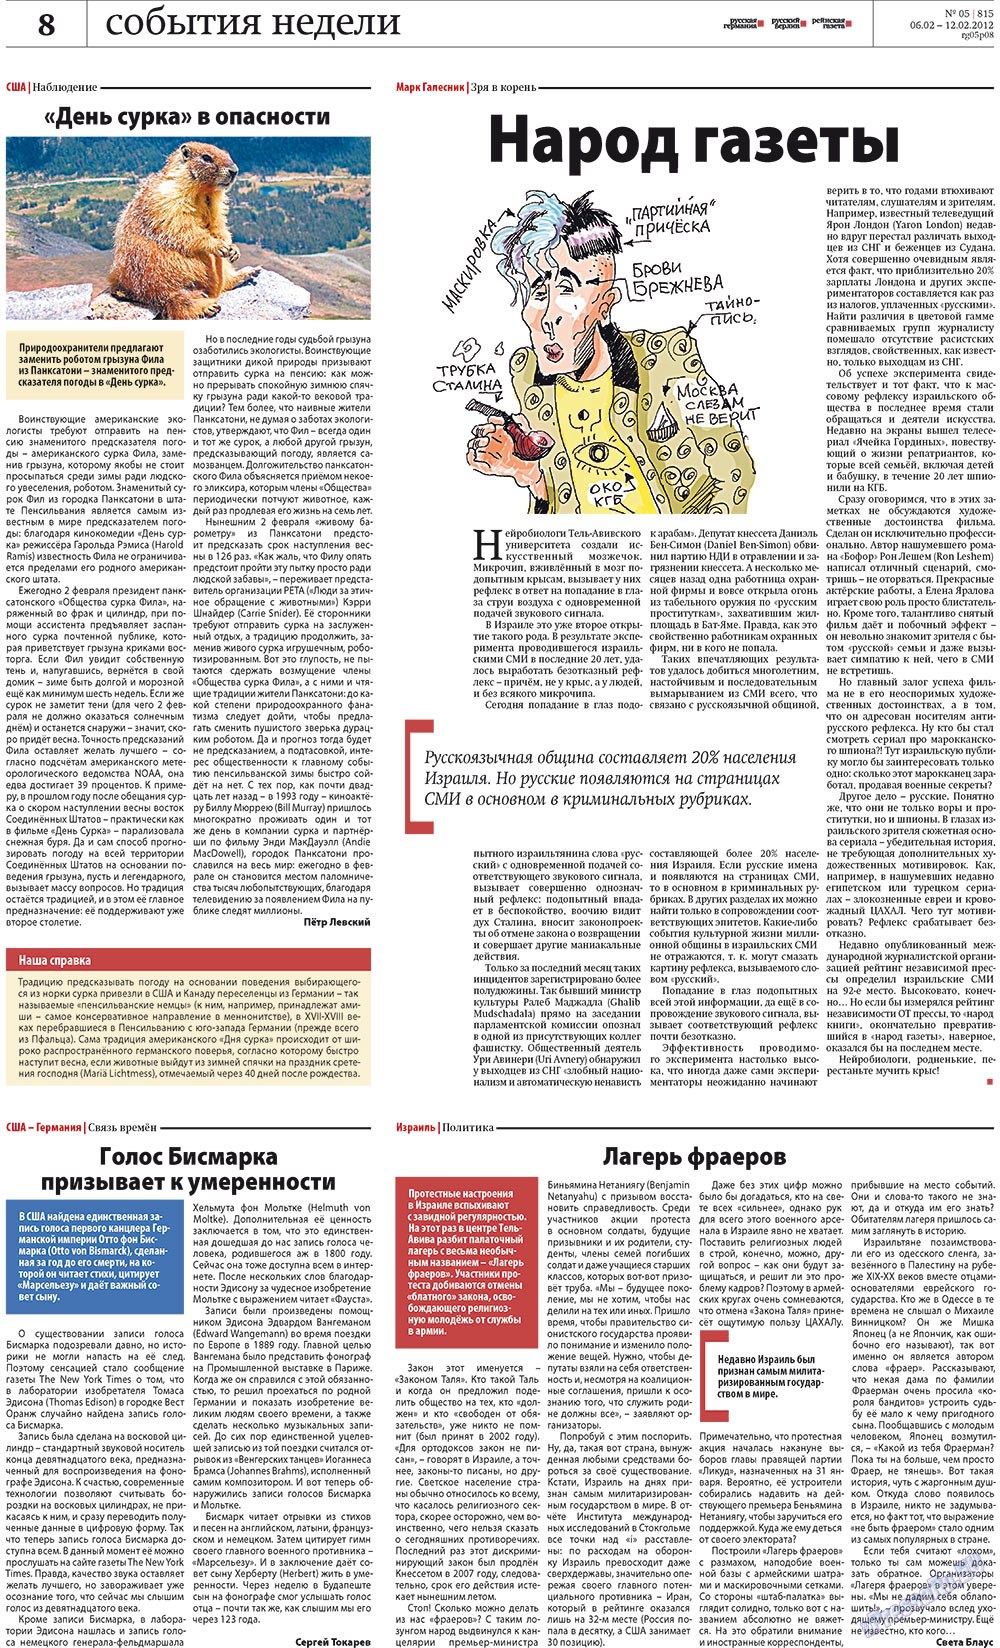 Рейнская газета, газета. 2012 №5 стр.8